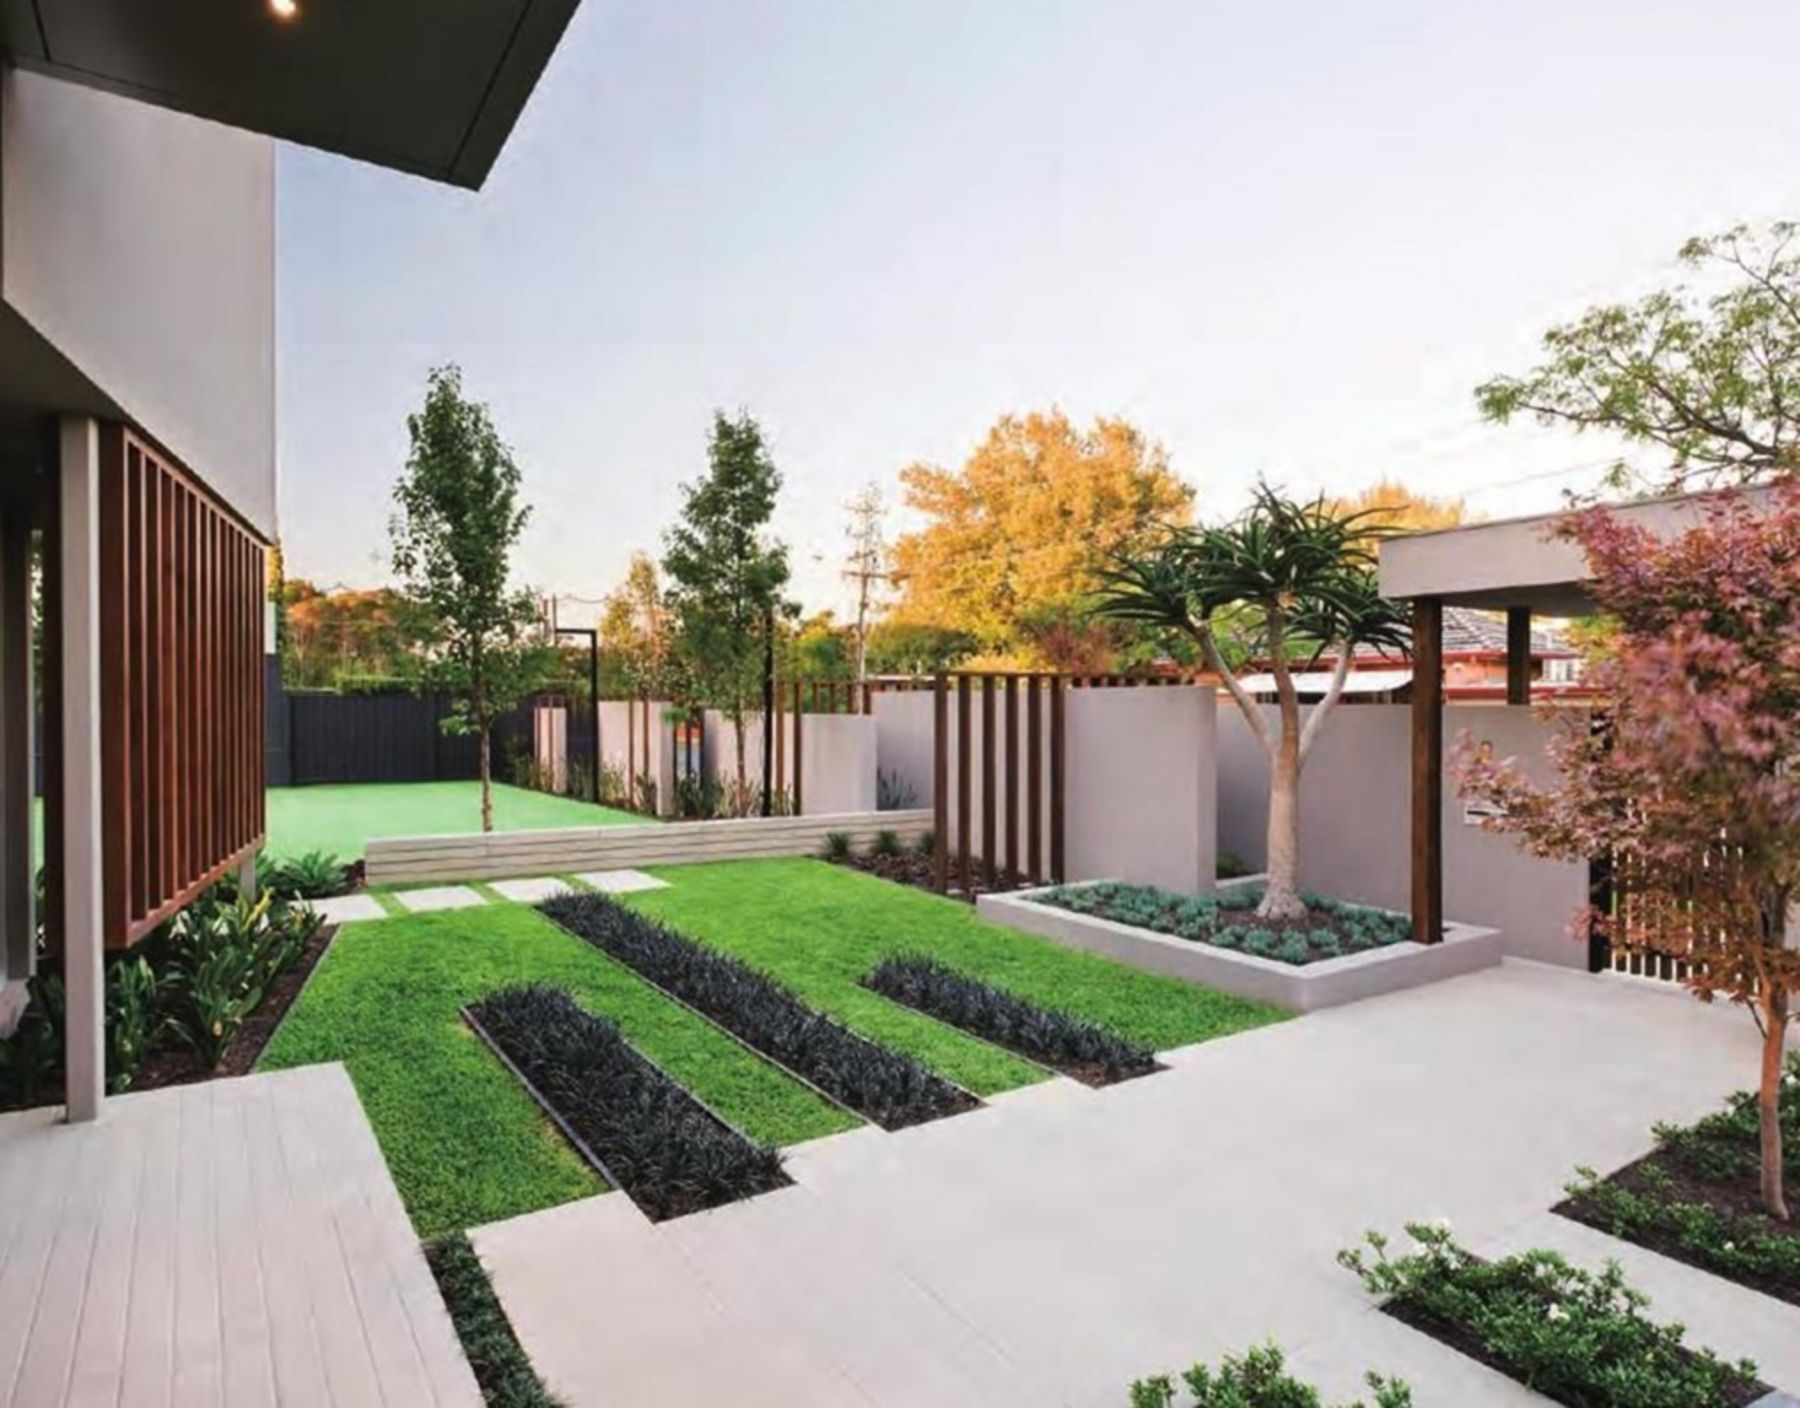 10 Most Popular Front Yard Garden Design Ideas For Your Minimalist Home Outdoor -   14 garden design Minimalist minimalism ideas